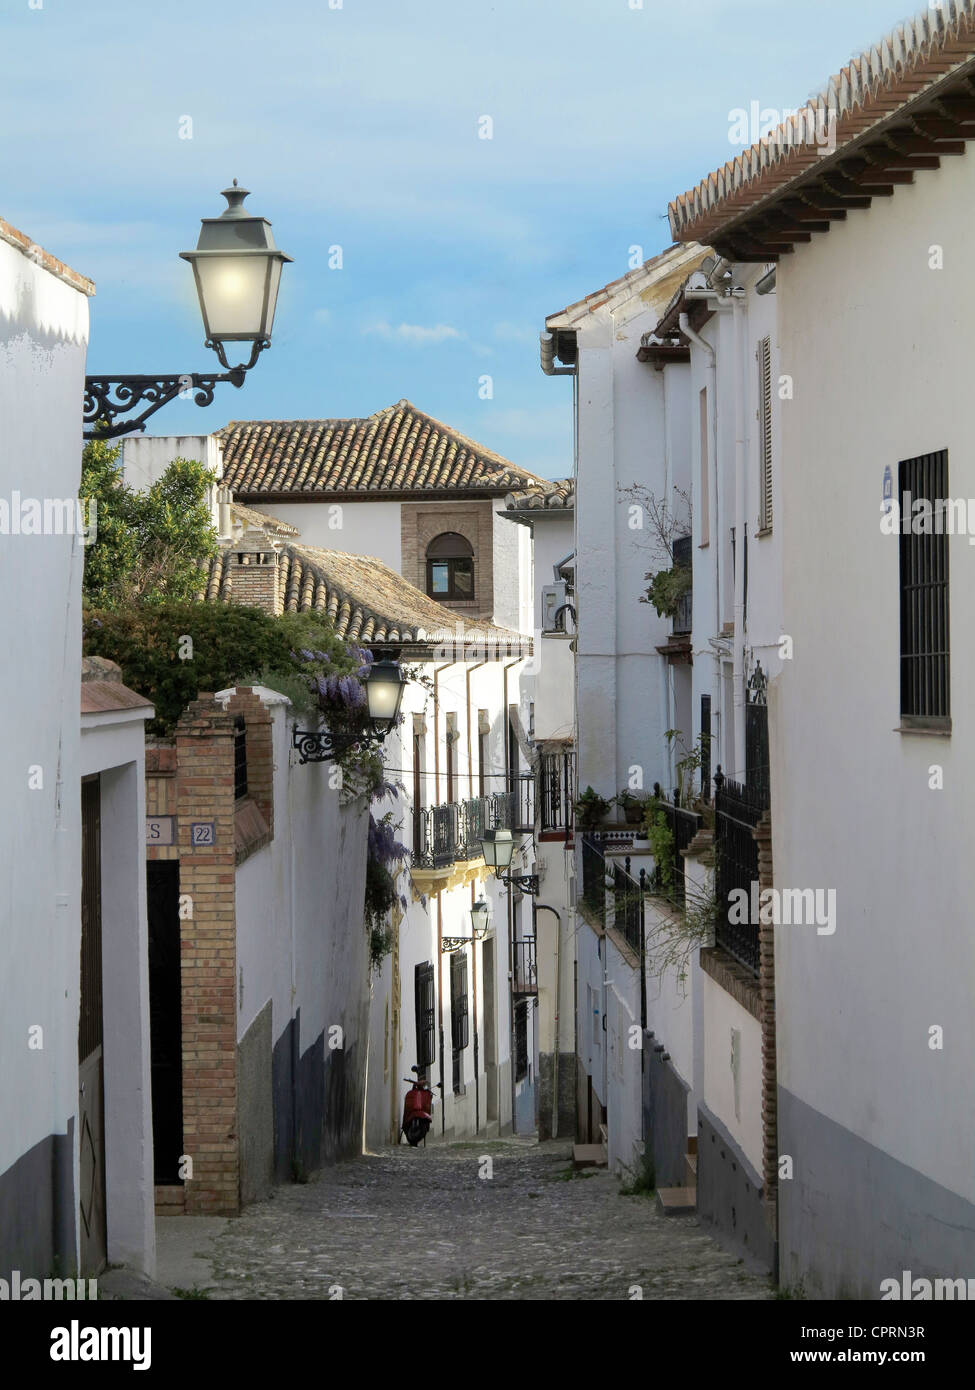 Street scene of historical Albayzin district Granada Spain Stock Photo